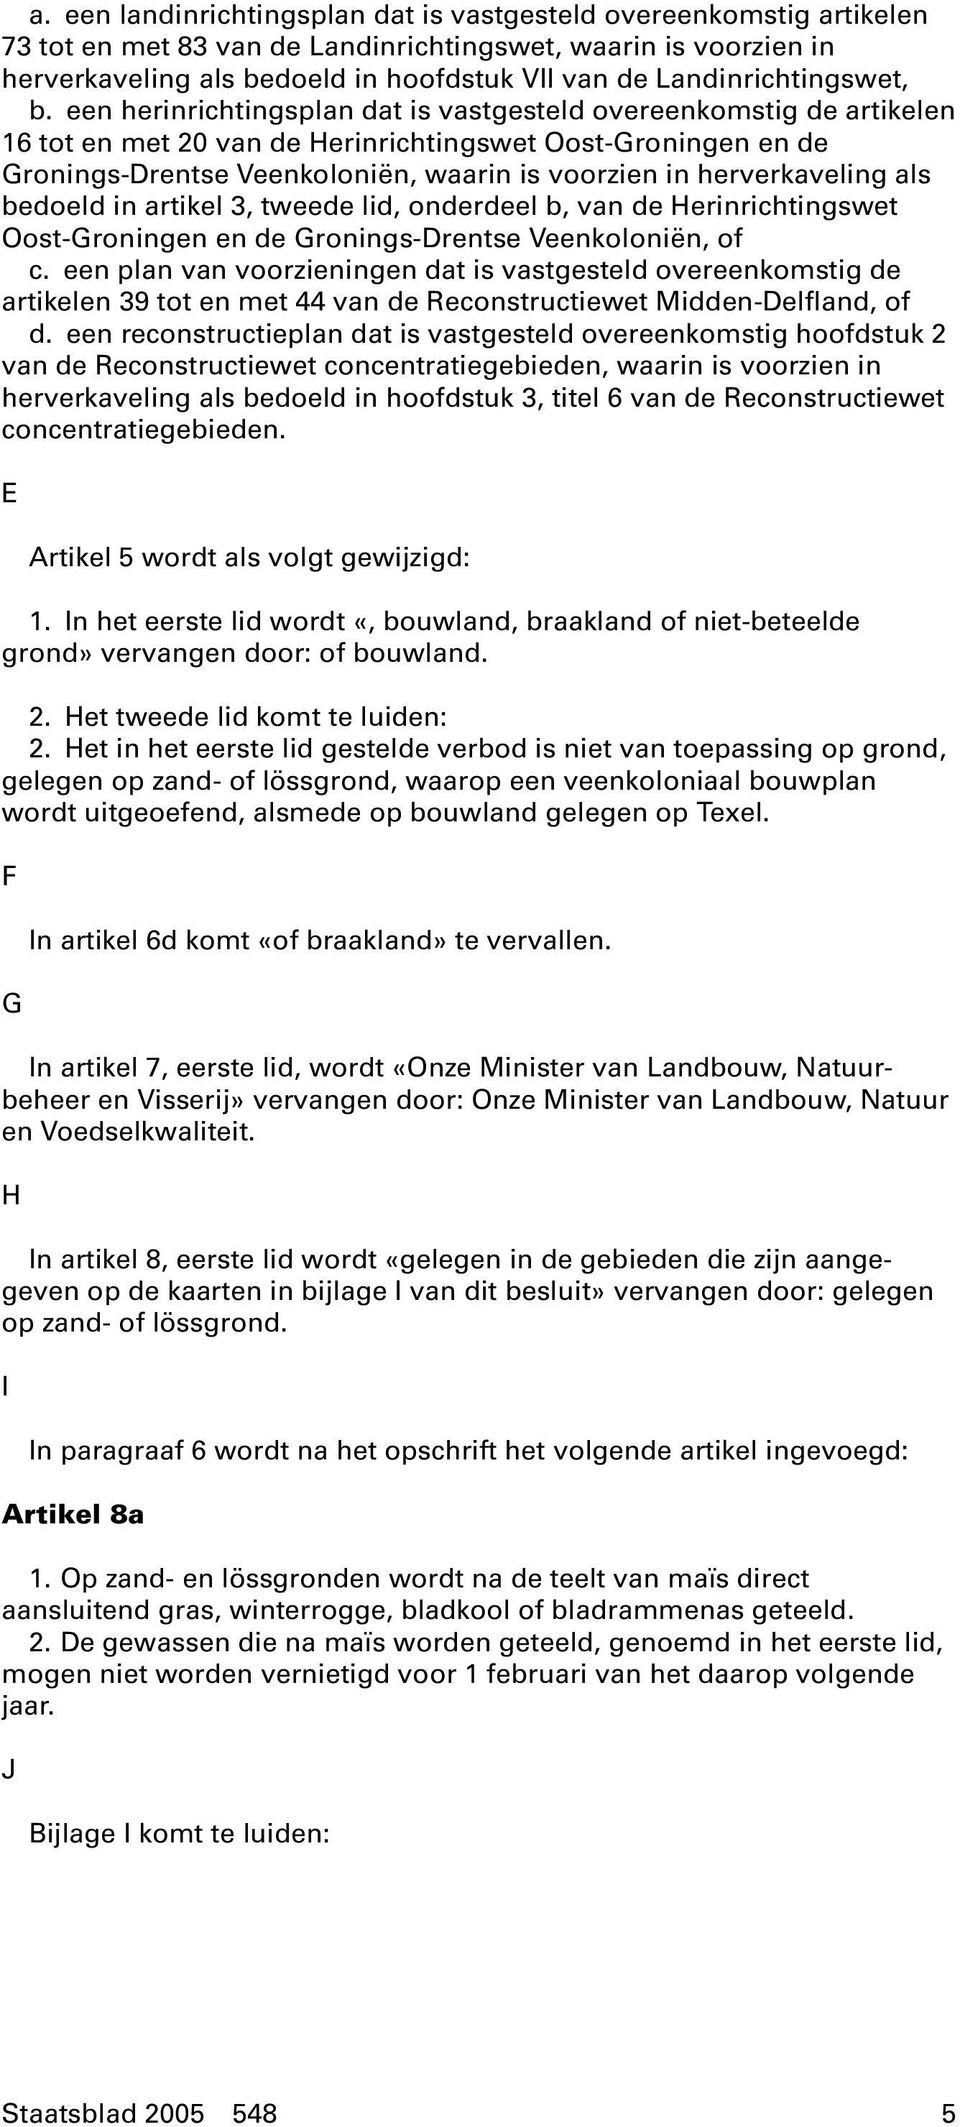 een herinrichtingsplan dat is vastgesteld overeenkomstig de artikelen 16 tot en met 20 van de Herinrichtingswet Oost-Groningen en de Gronings-Drentse Veenkoloniën, waarin is voorzien in